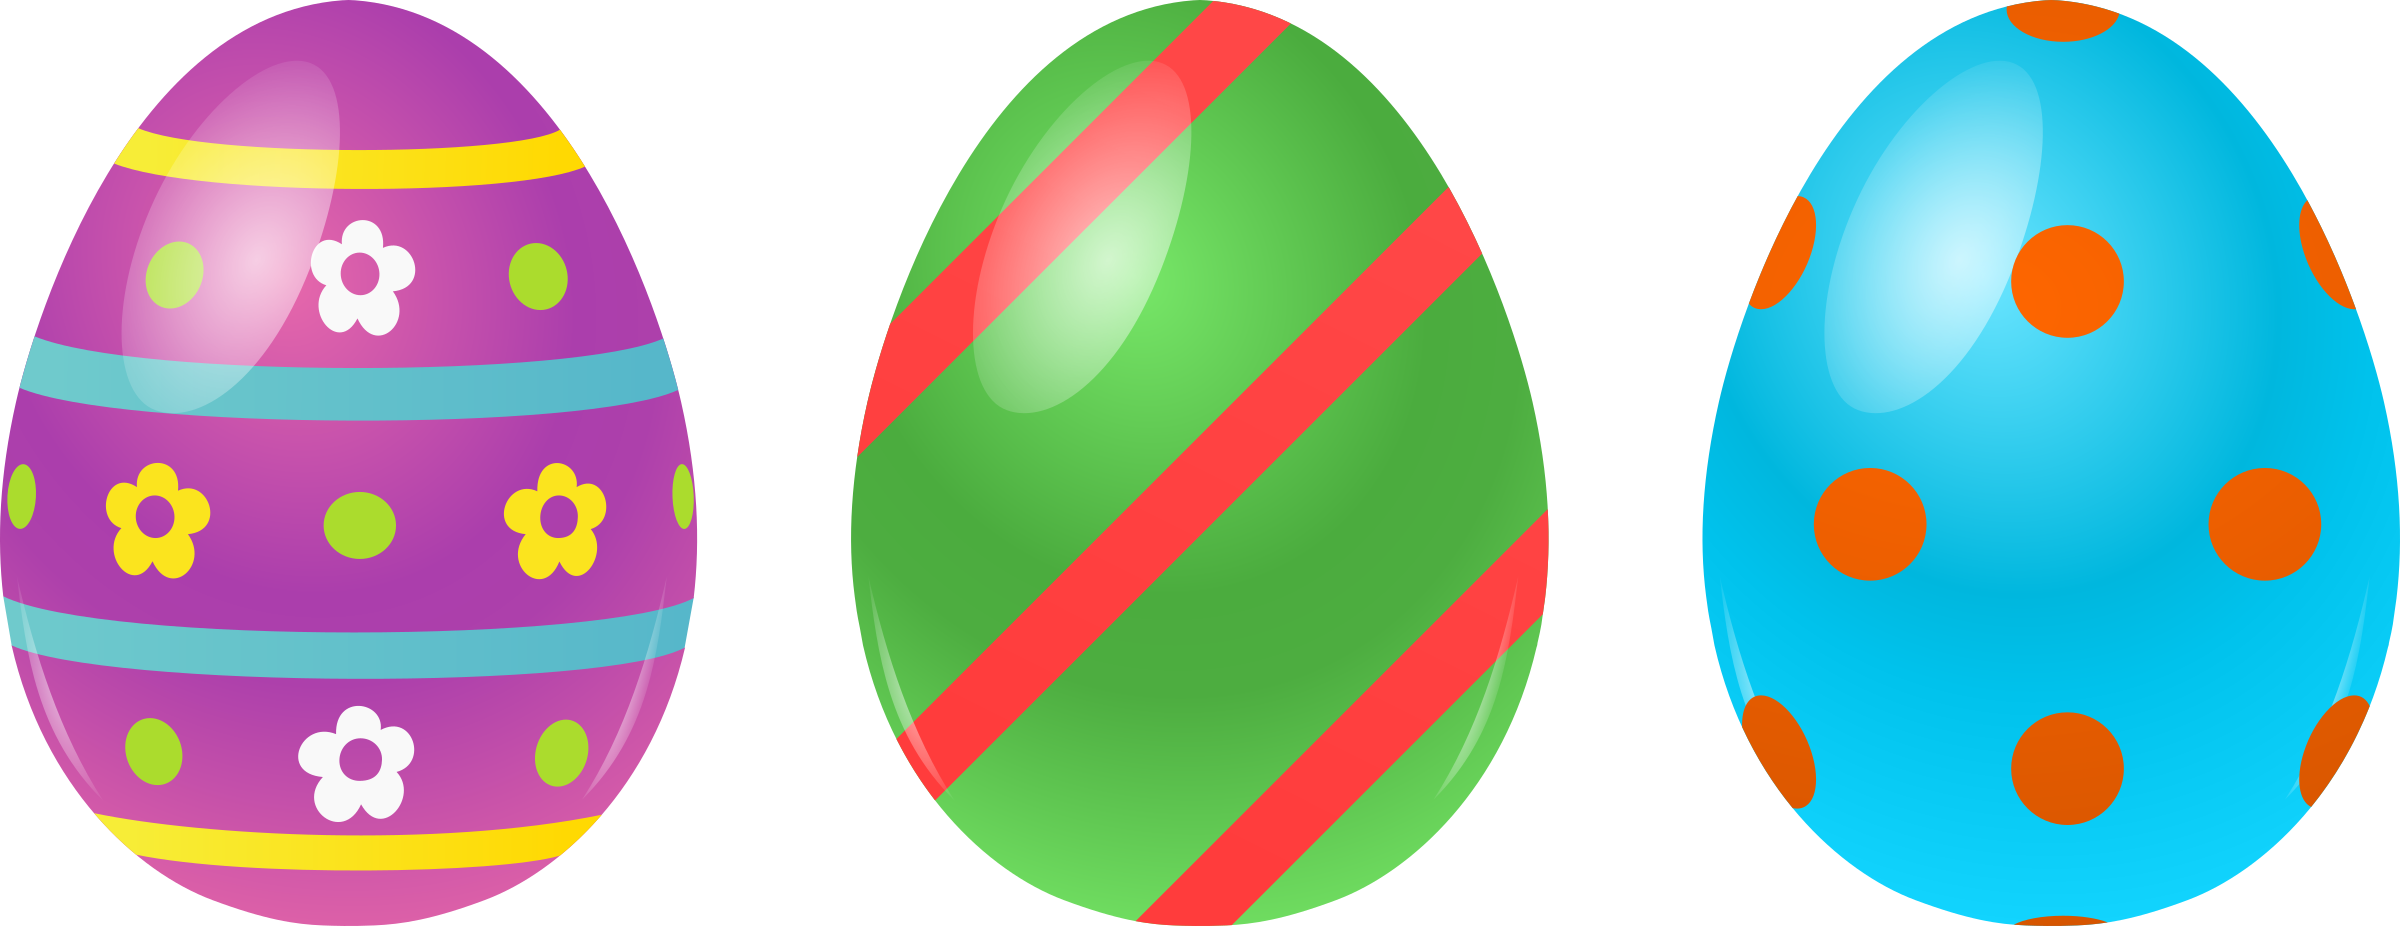 Download PNG image - Single Easter Egg Background PNG 